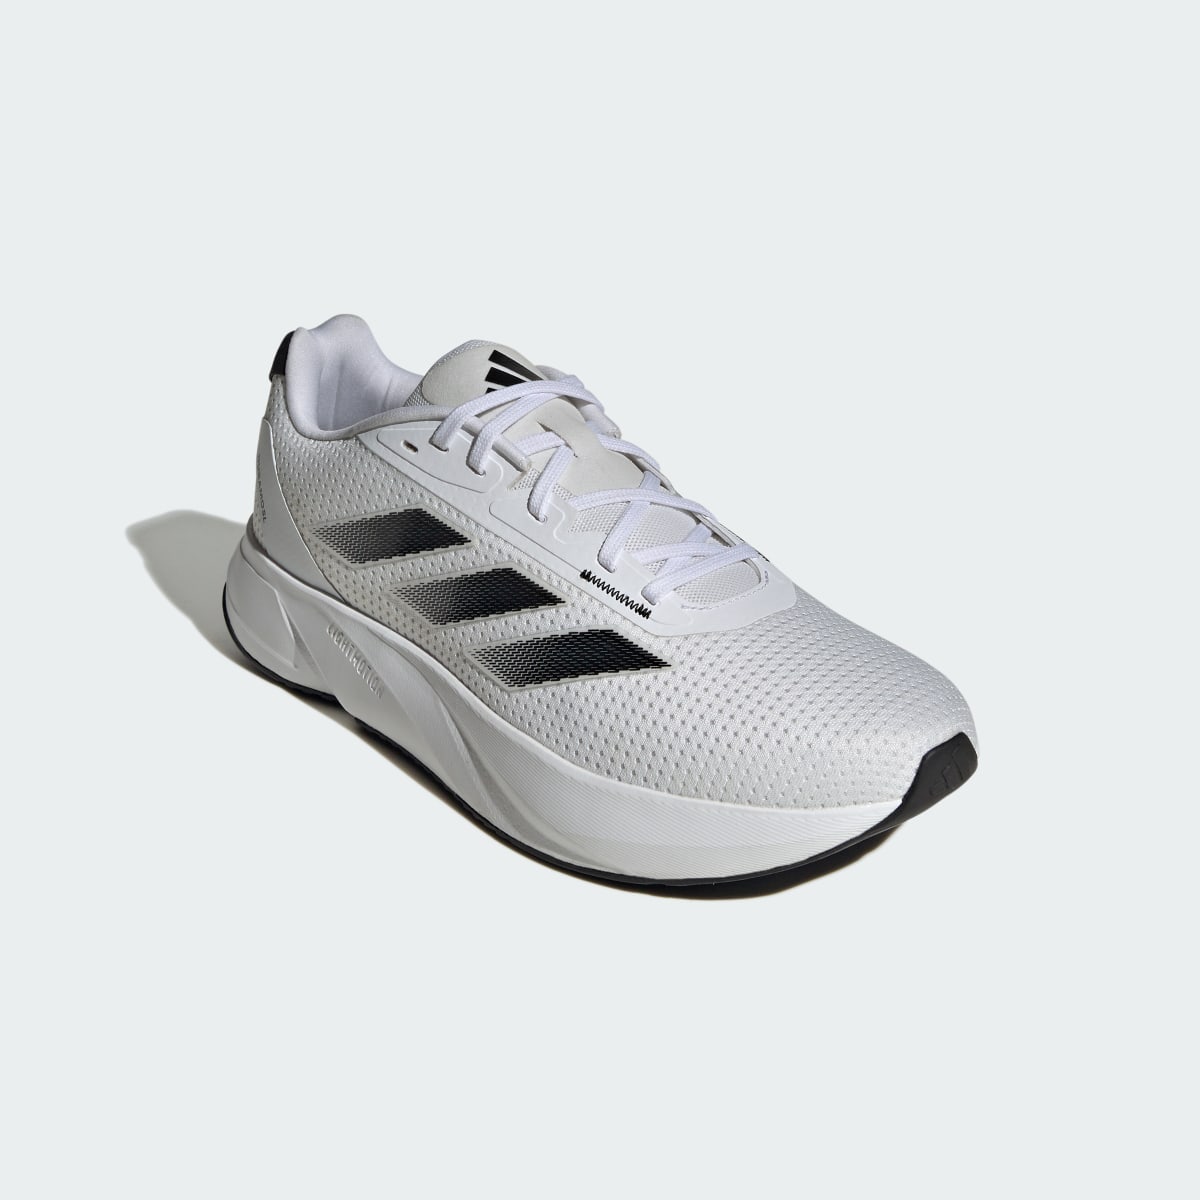 Adidas Duramo SL Running Shoes. 5